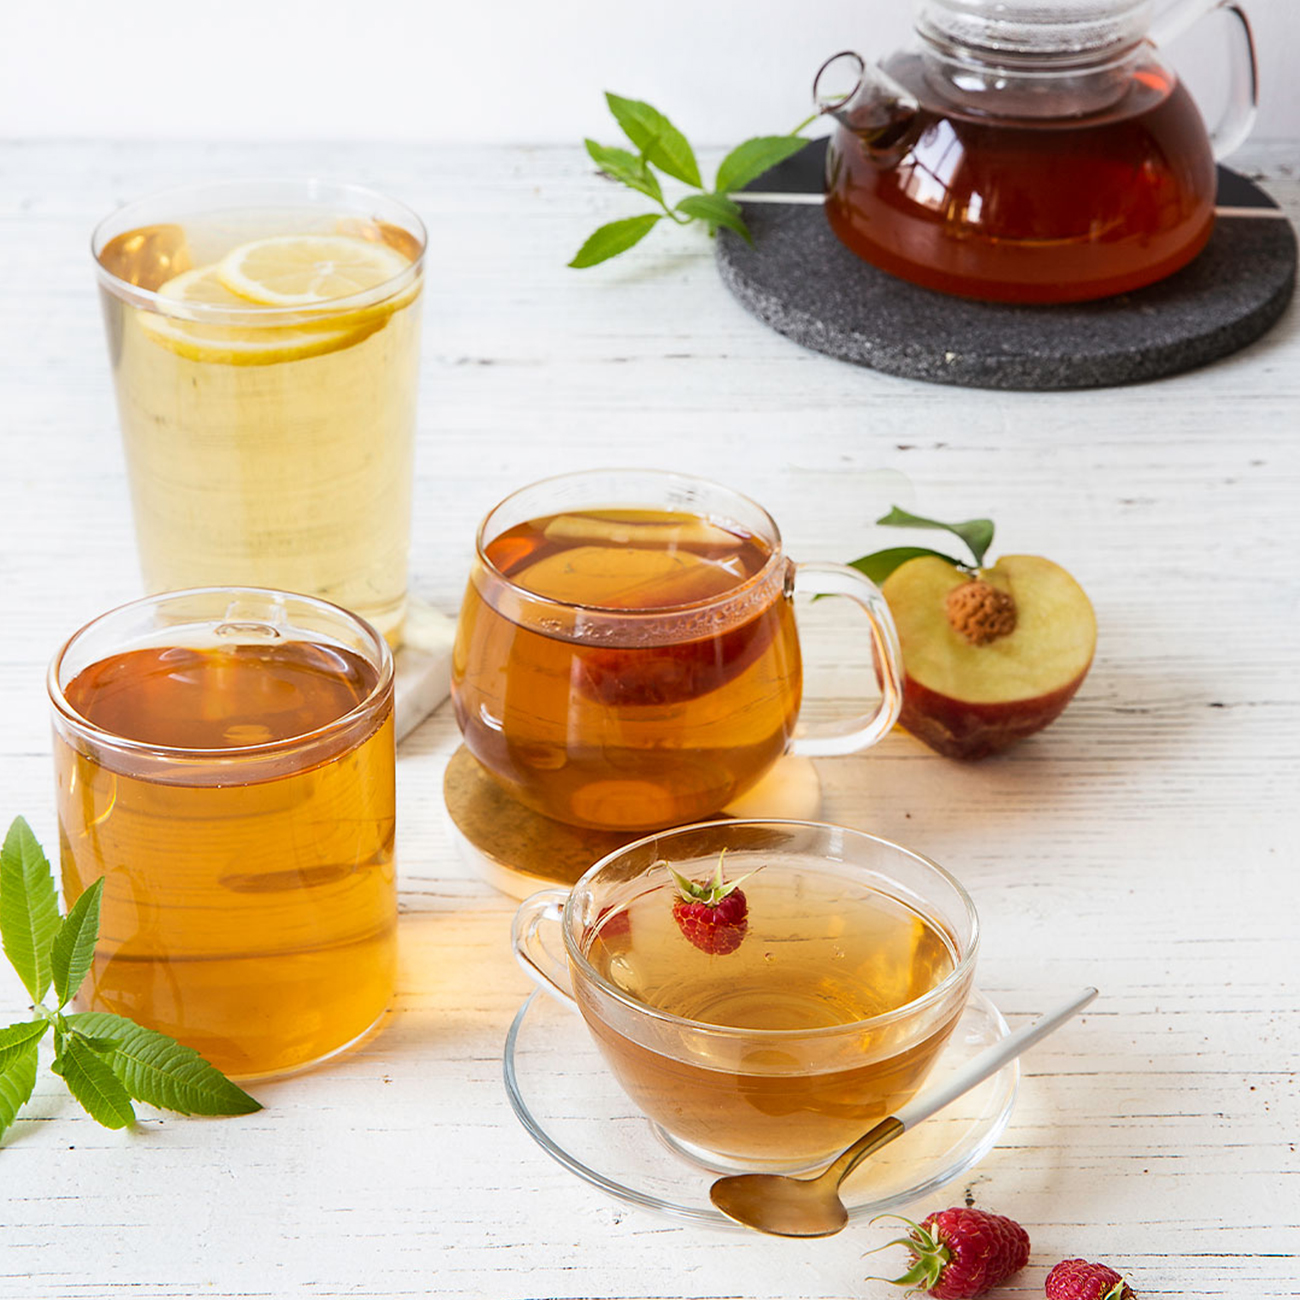 šoljice herbalife nutrition instant čaja na bazi bilja u ukusu limuna i breskve.